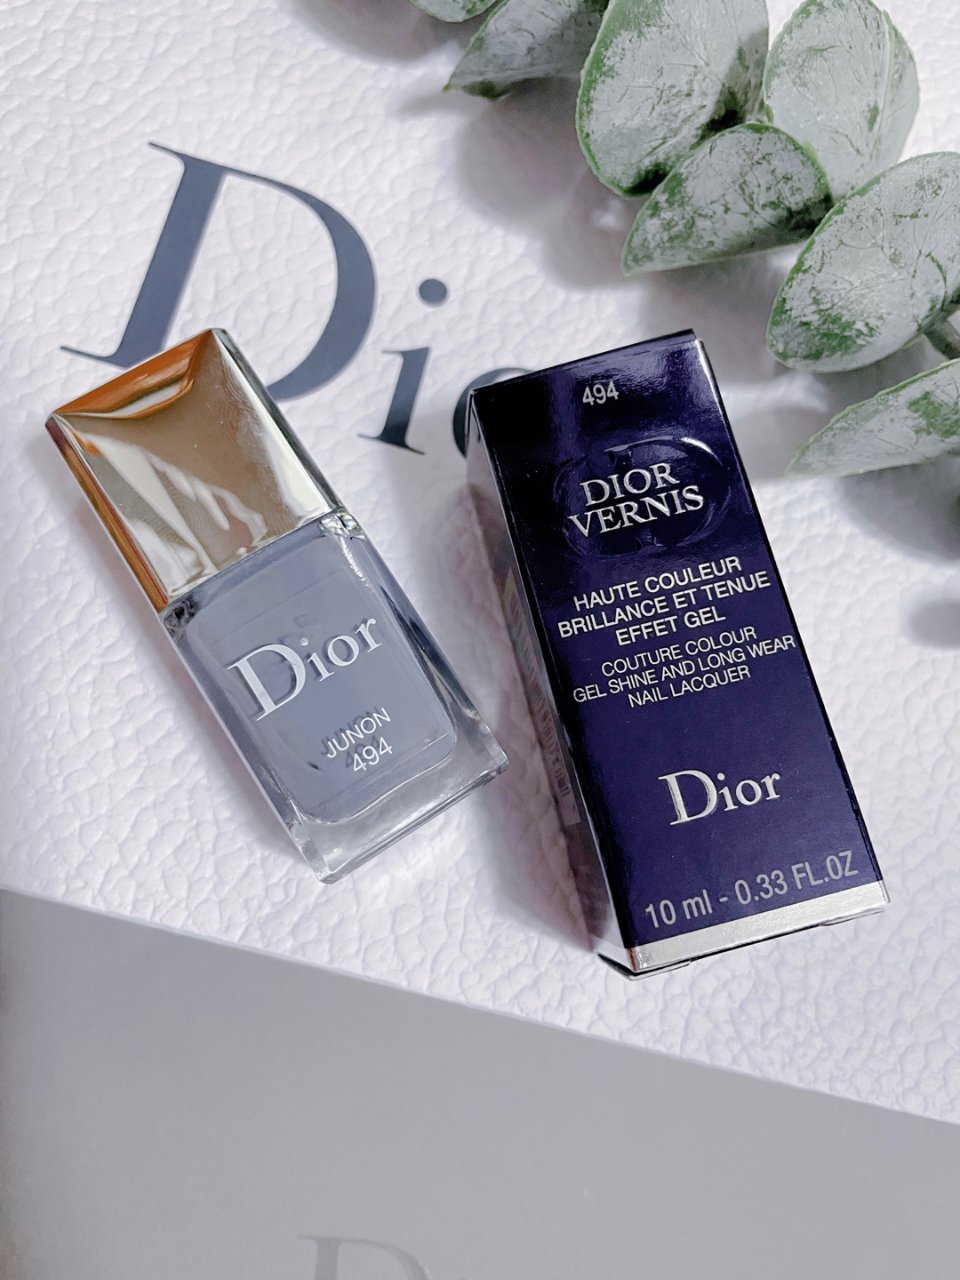 Dior家的雾霾蓝指甲油绝美...